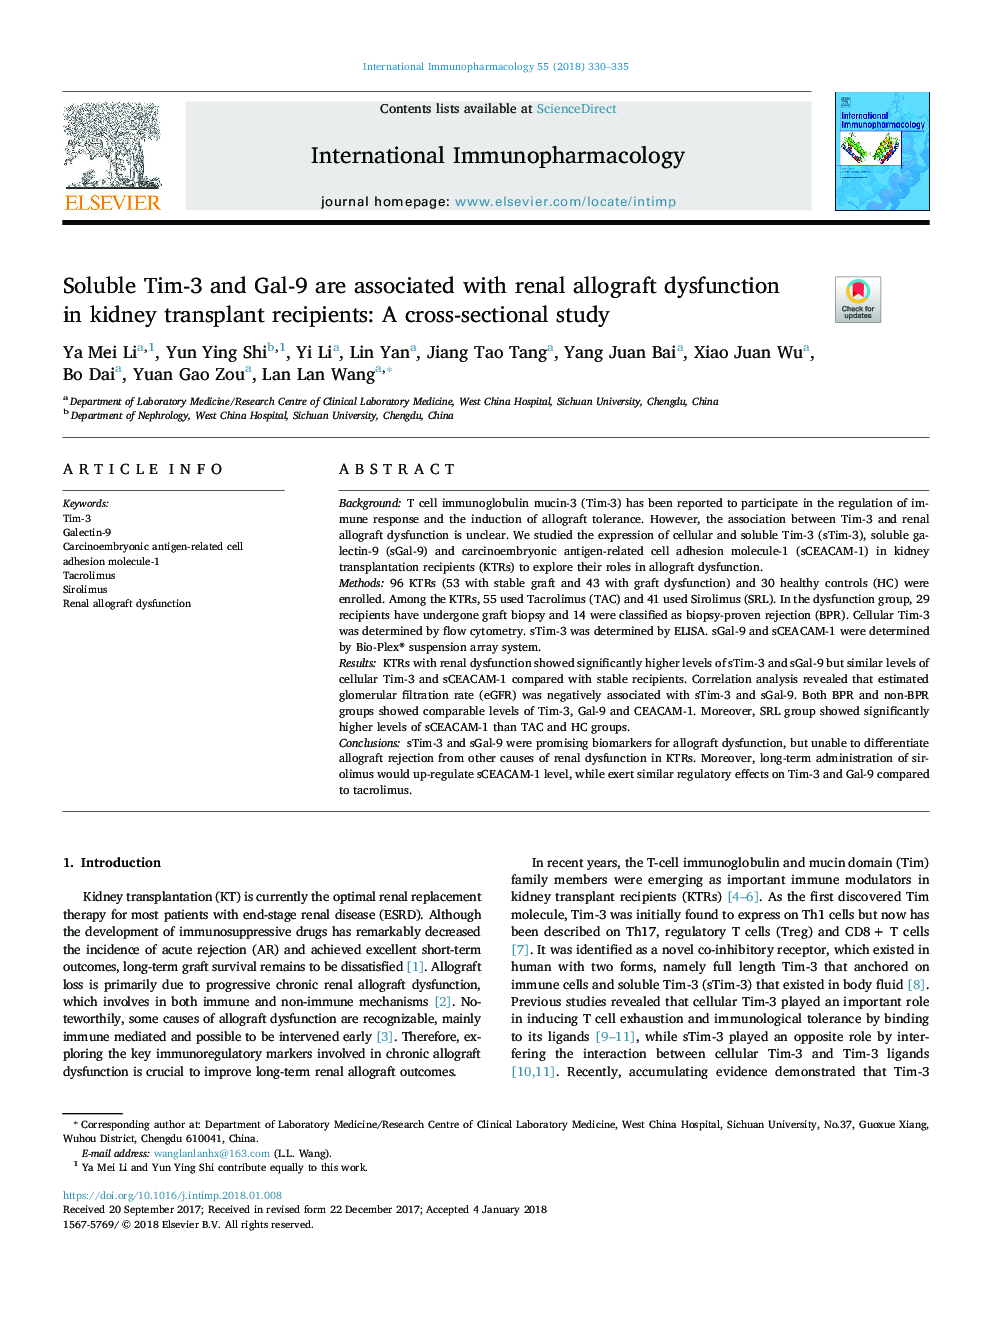 محلولهای تیم-3 و گال -9 با اختلال عملکرد کلیه در پیوند کلیه ارتباط دارد: یک مطالعه مقطعی 